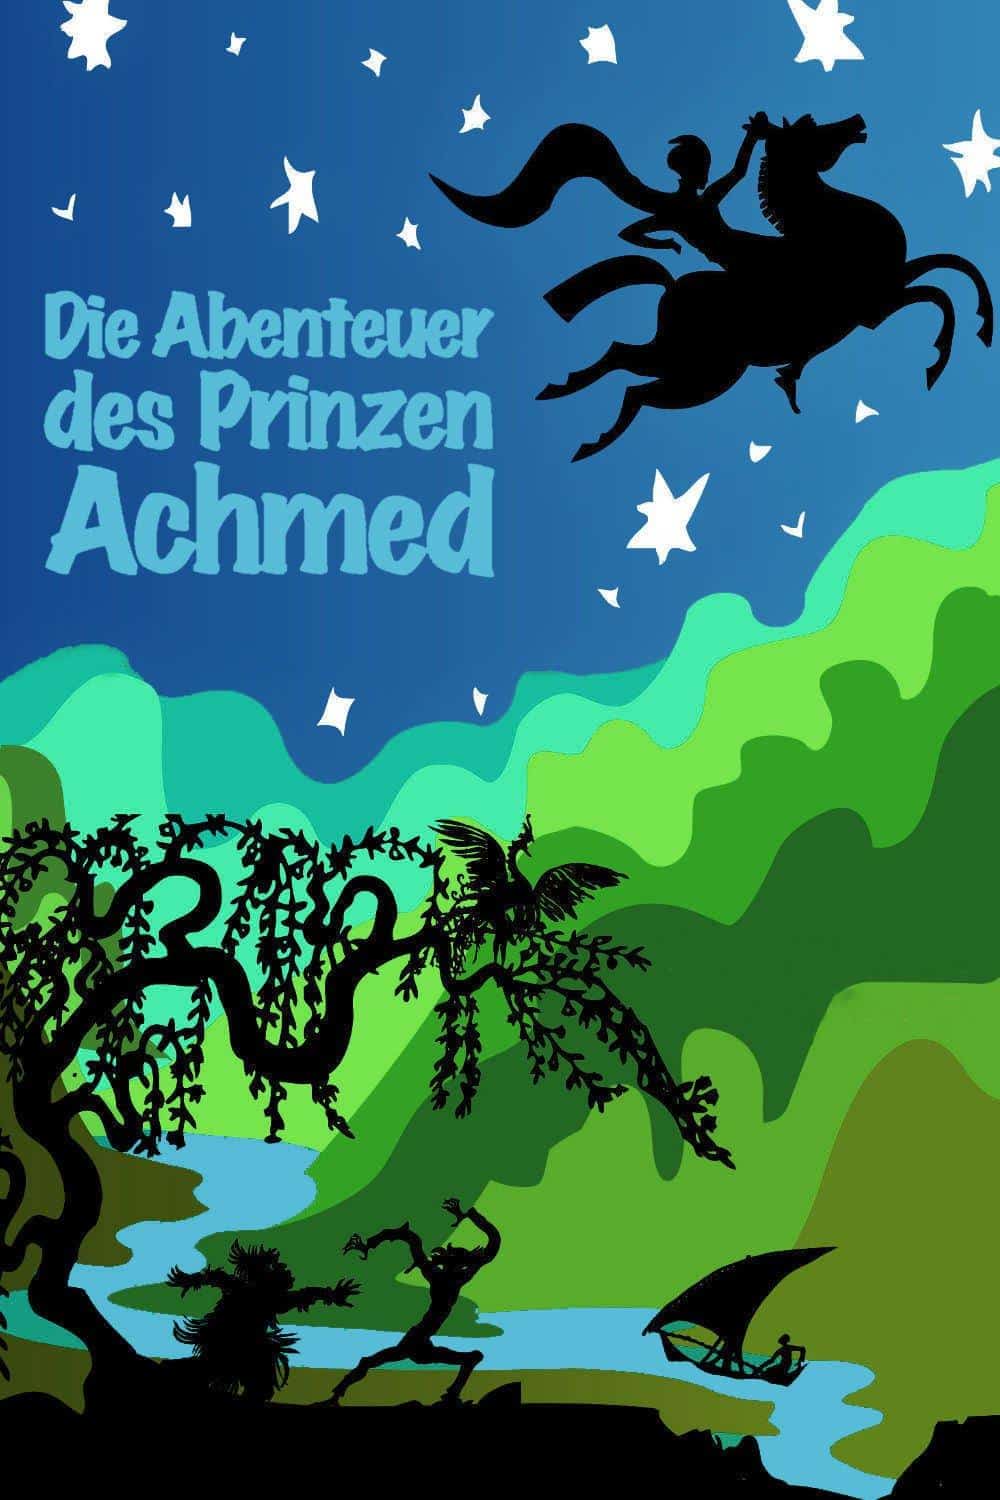 Die Abenteuer des Prinzen Achmed (Lotte Reiniger, 1926)